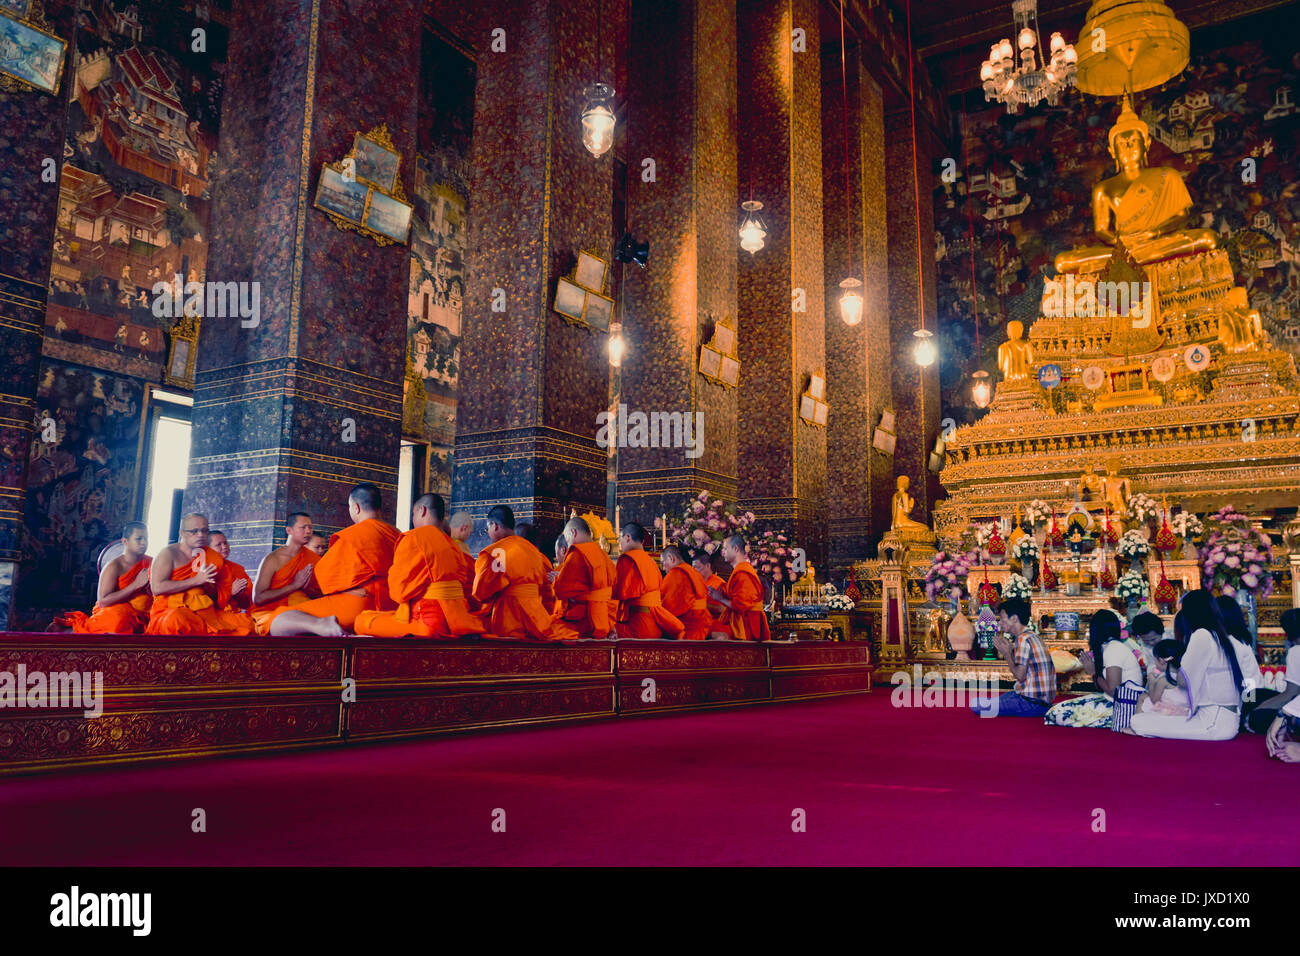 BANGKOK, THAILAND- DECEMBER 26, 2016: Buddhist monks pray at Wat Pho temple in Thailand's capital, Bangkok. Stock Photo